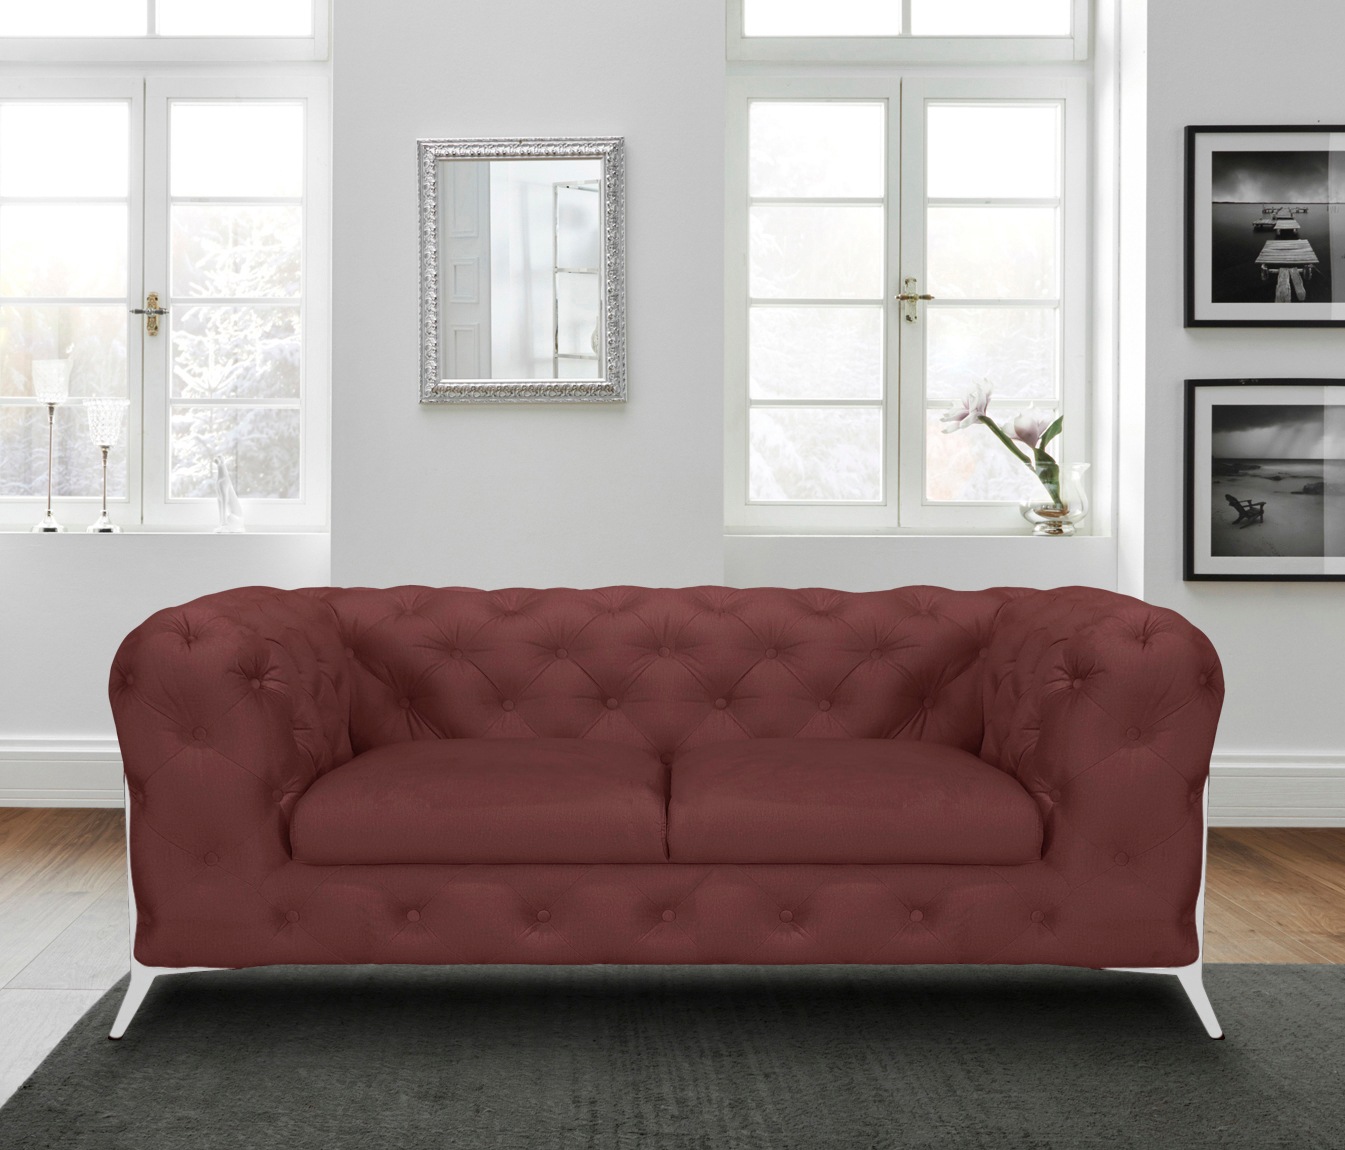 Leonique Chesterfield-Sofa »Amaury«, aufwändige Knopfheftung, moderne Chesterfield Optik, Fußfarbe wählbar